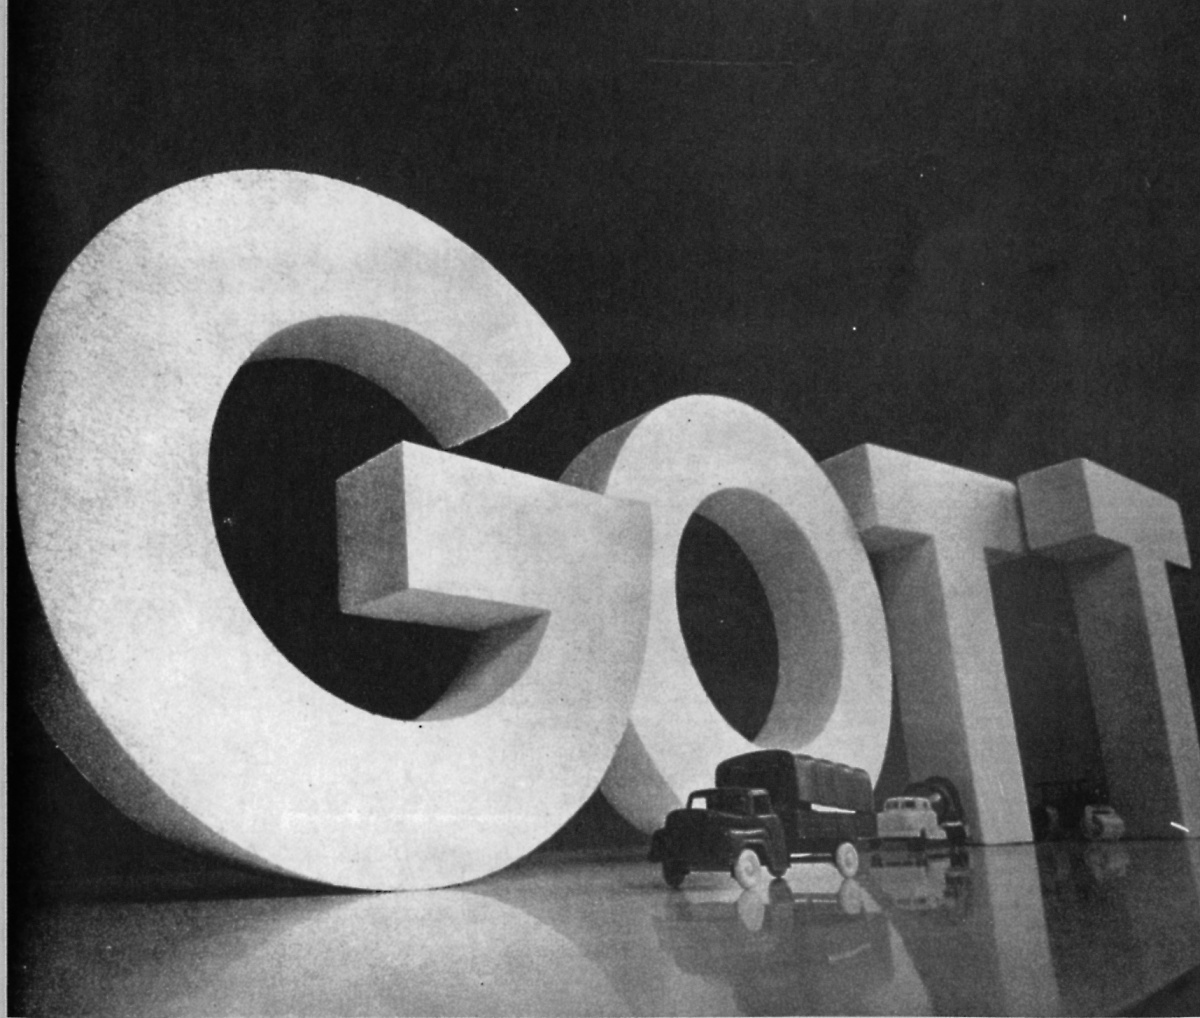 Gott-Architektur / Theoretisches Objekt: architektonische Landschaft, Bild: Düsseldorfer Kongreß "Kunst und Demokratie", 1969.